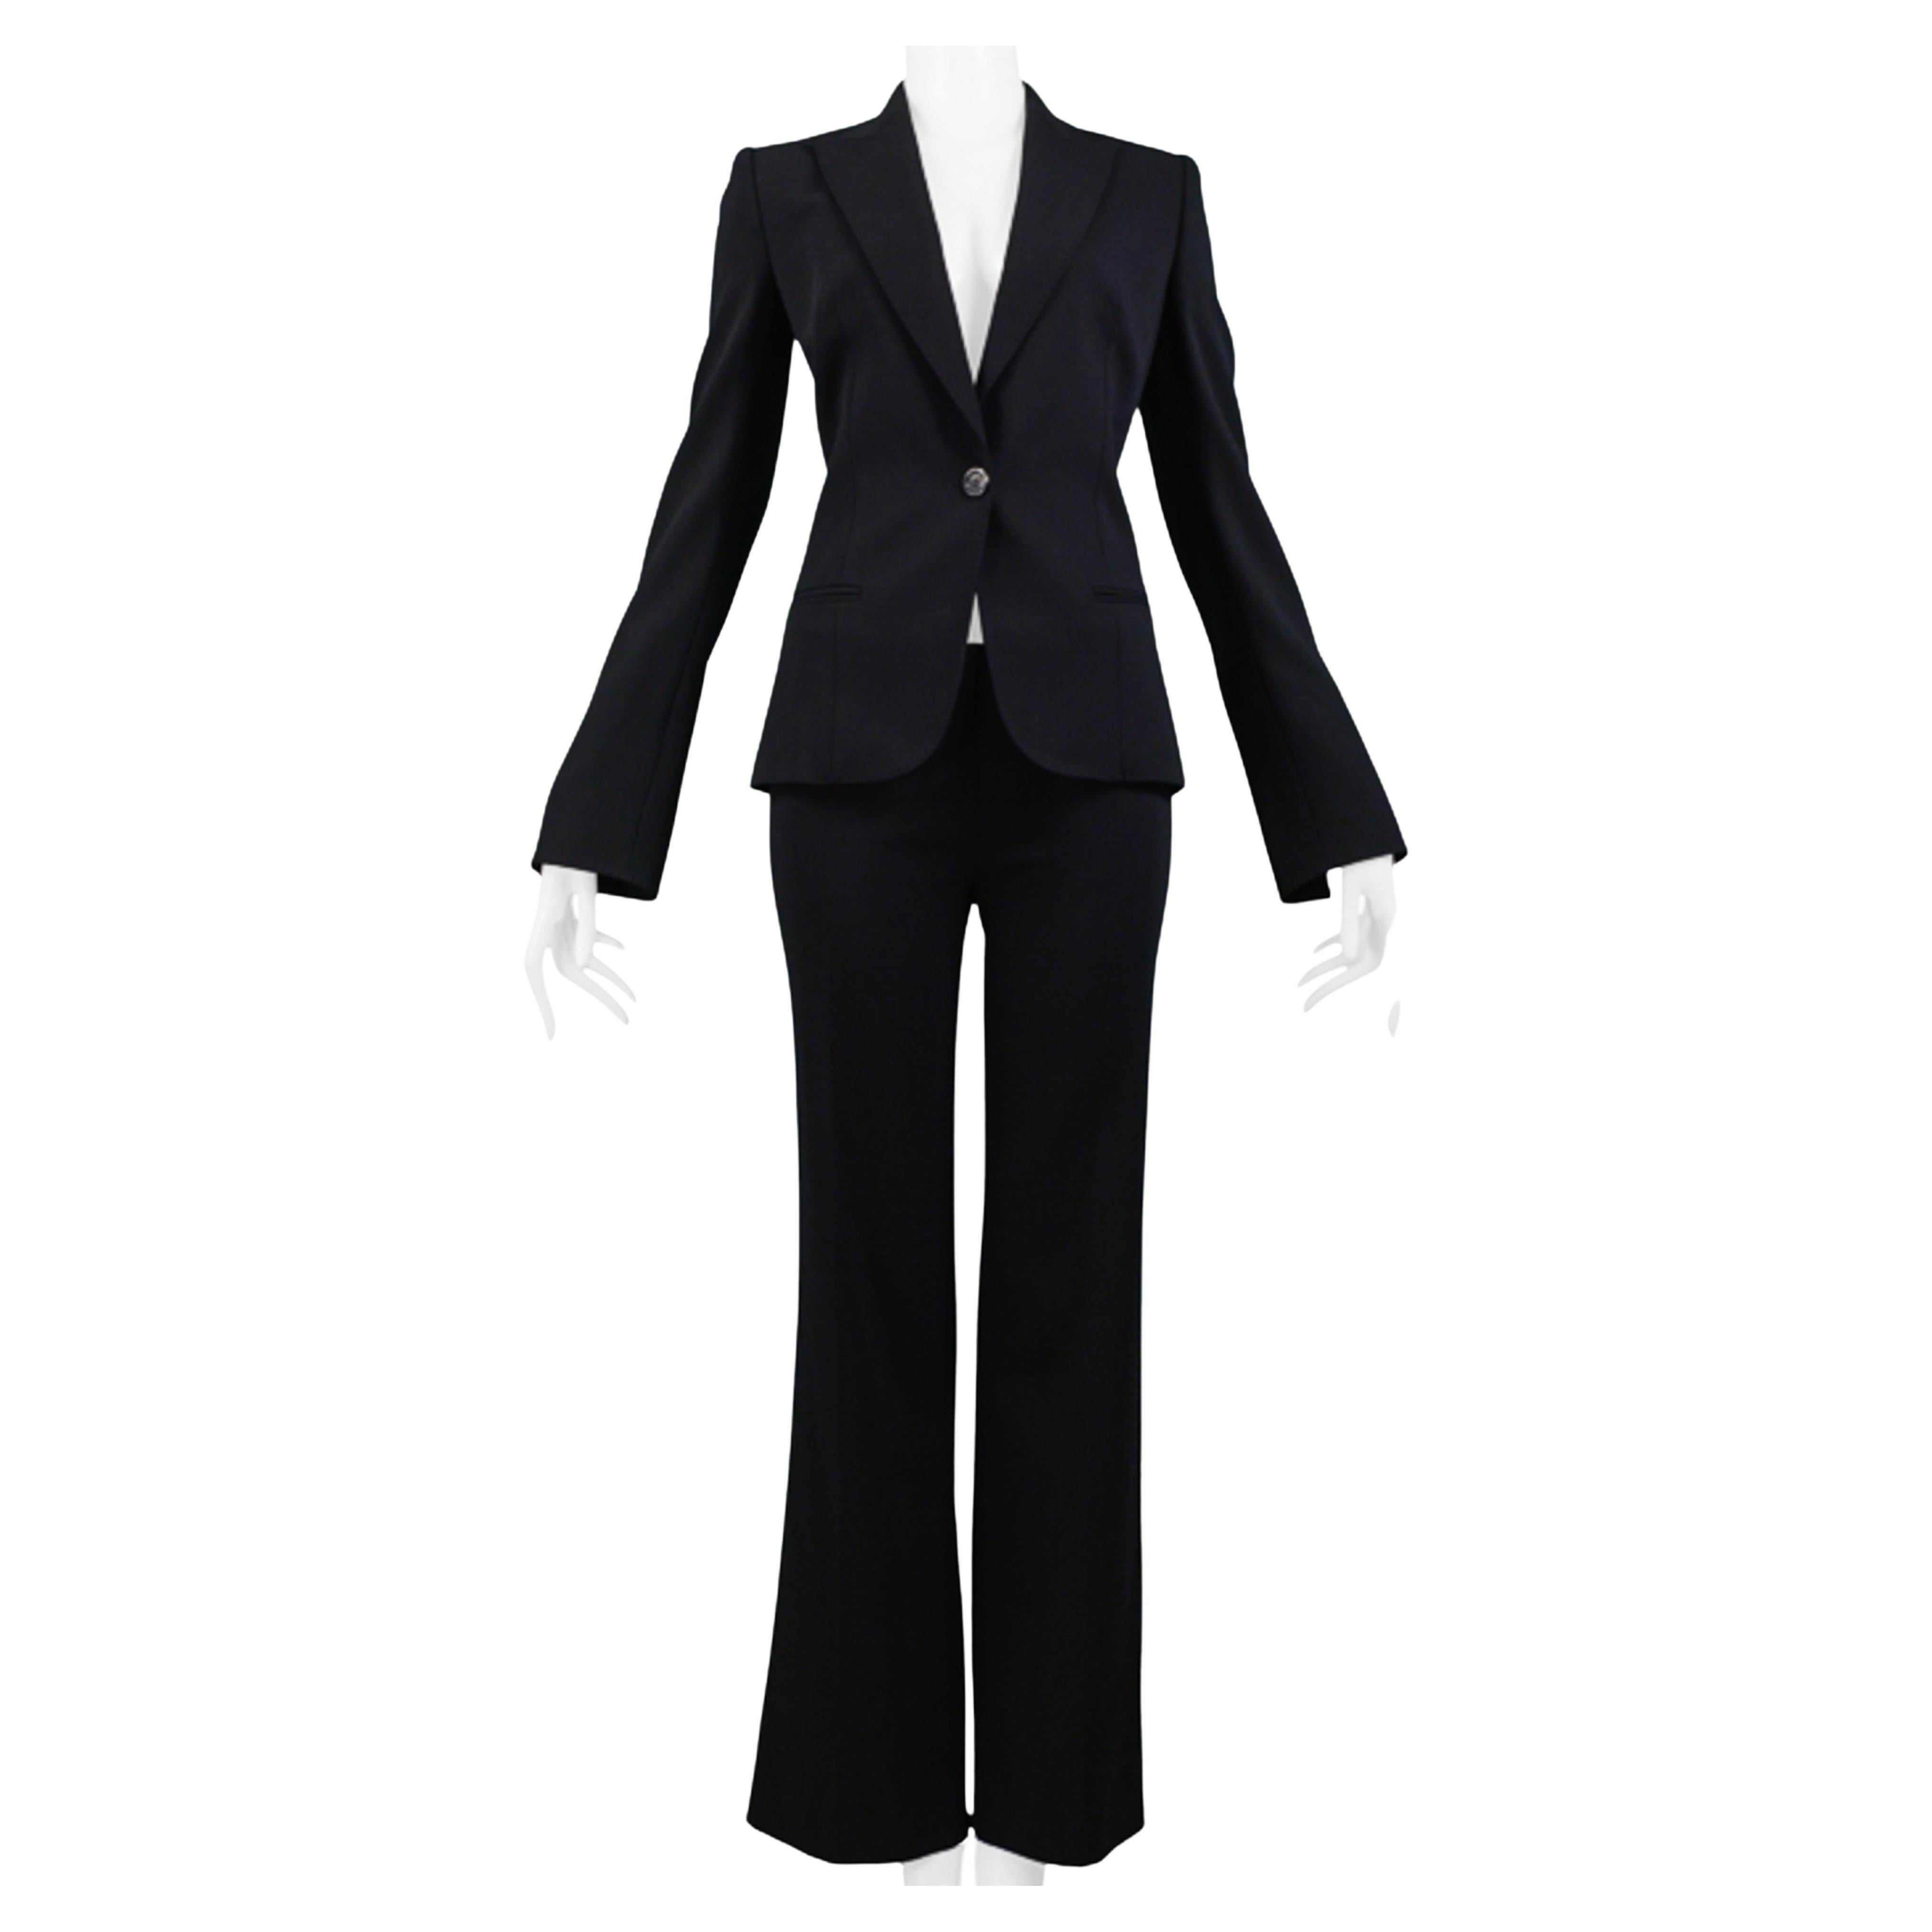 Gianfranco FerrecClassic Black Tailored Suit For Sale